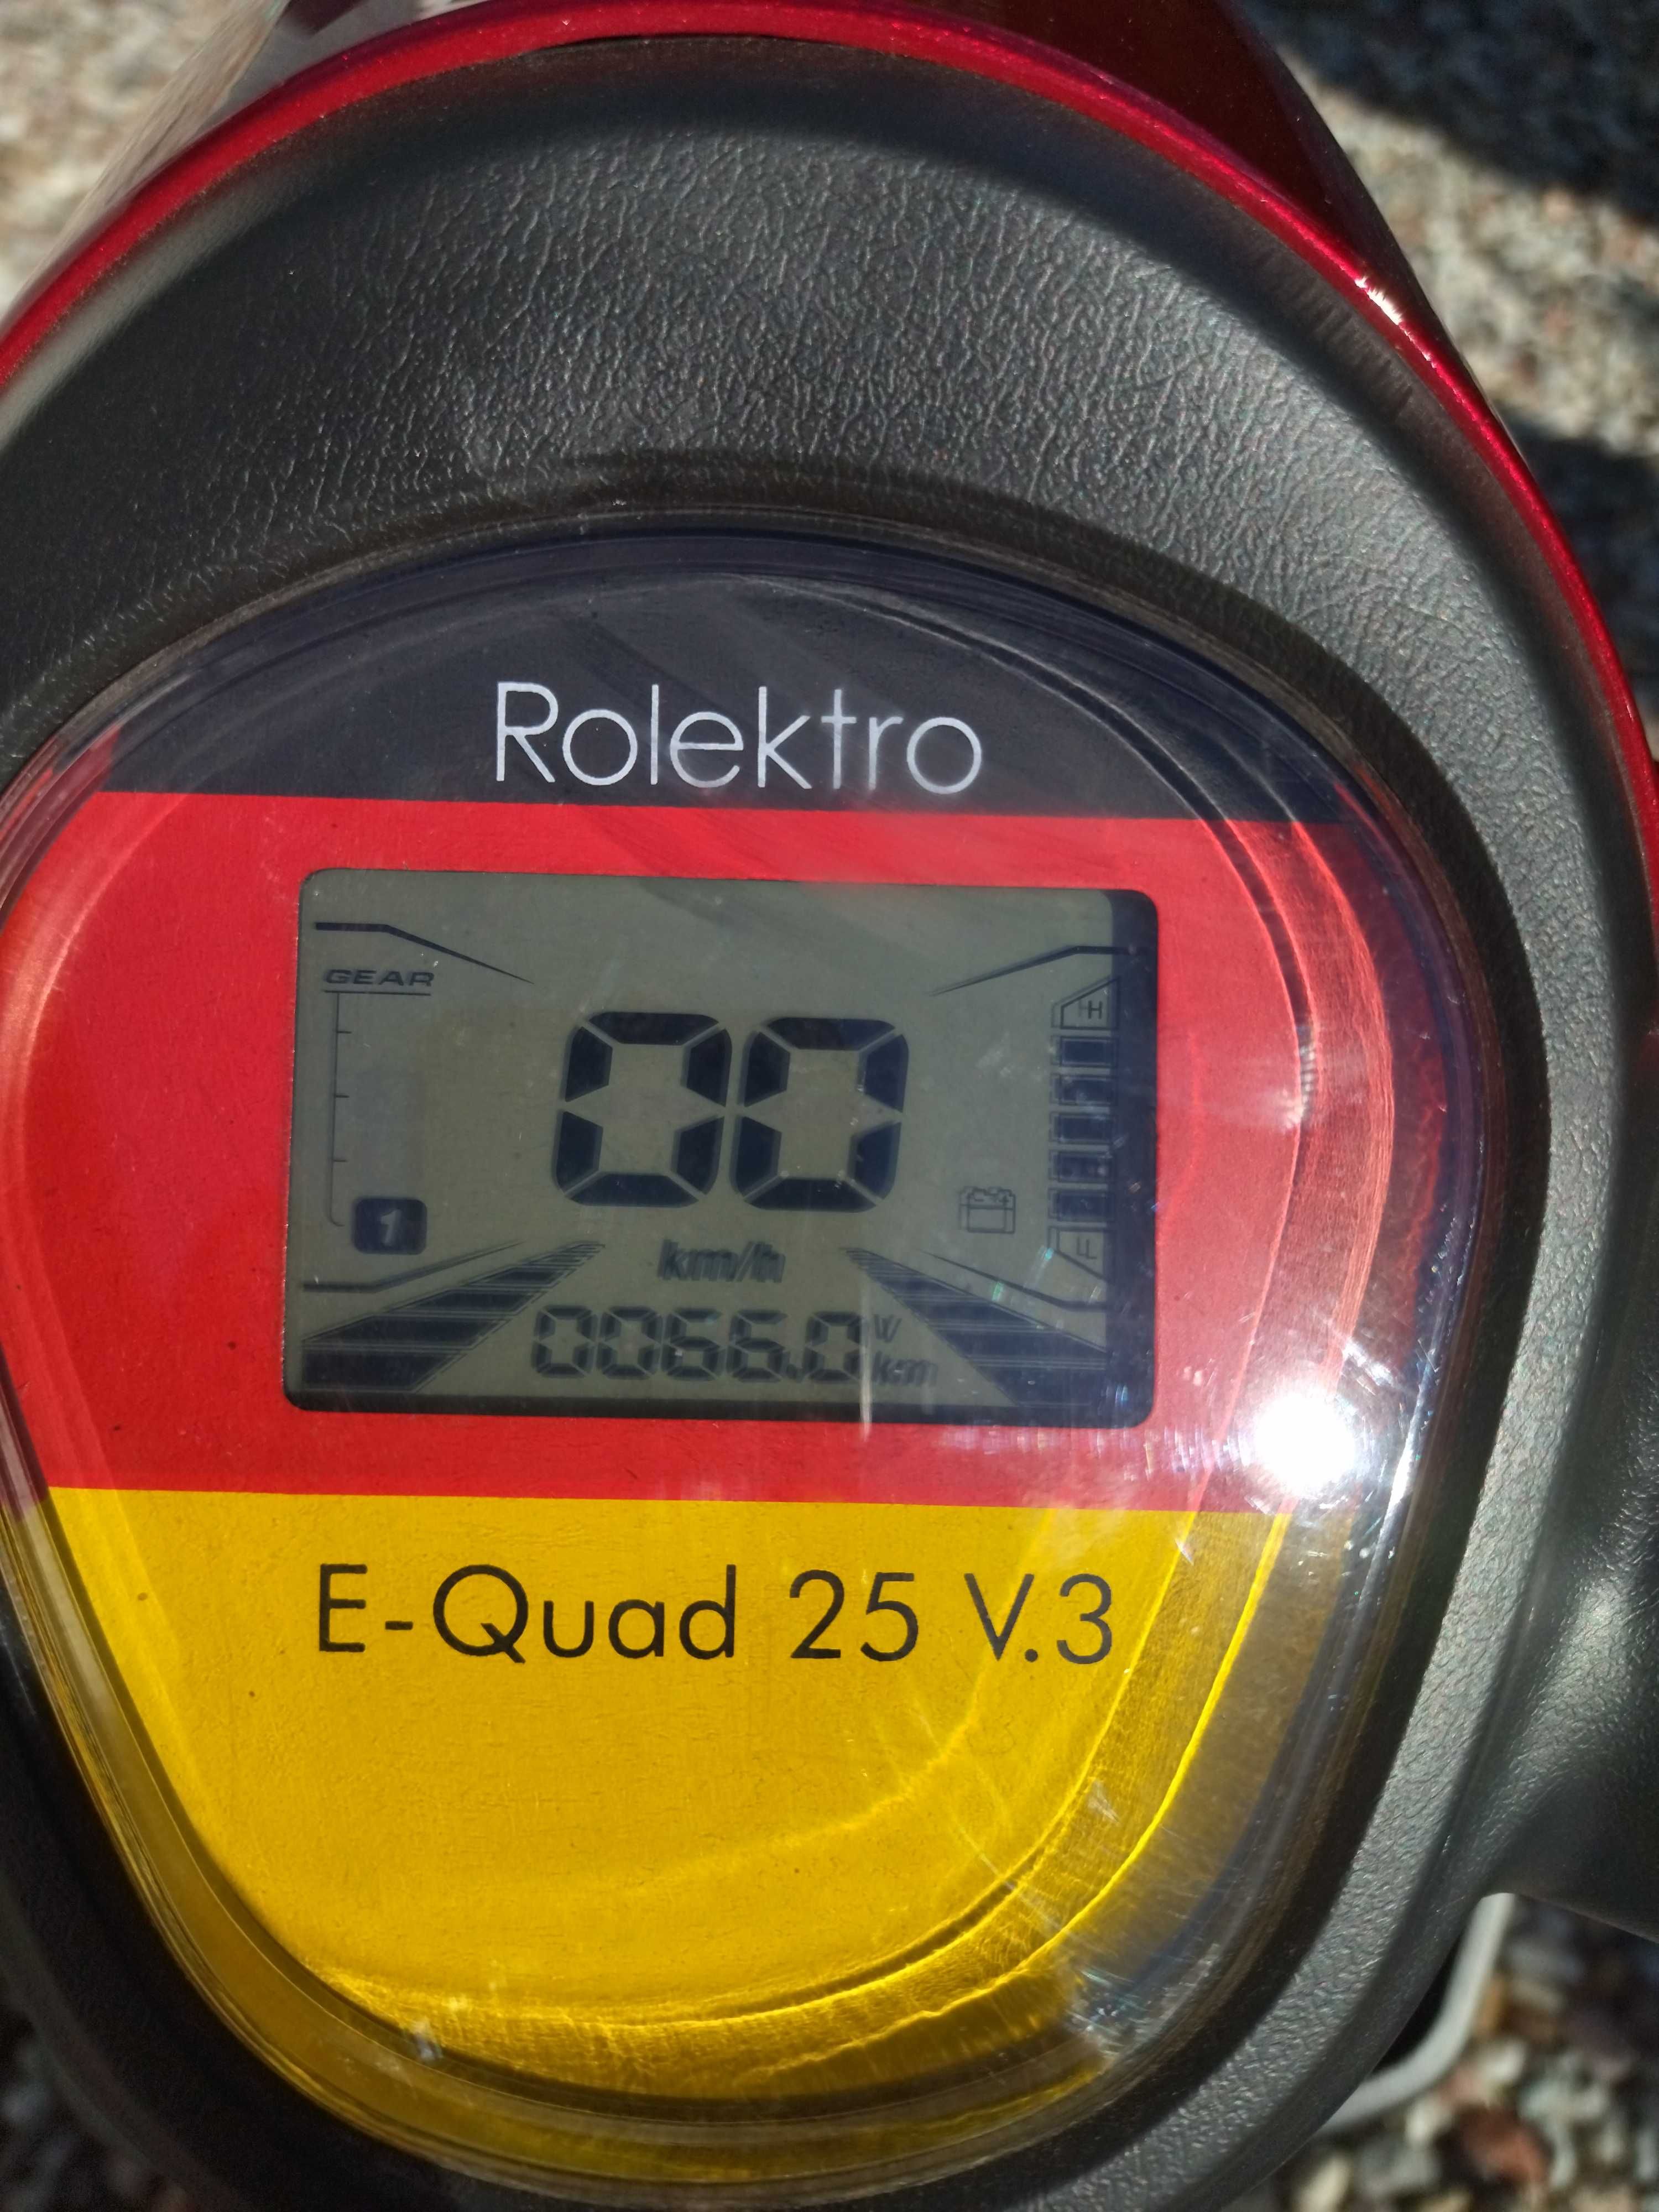 Skuter Rolektro, E-Quad 25 V.3 dla seniora